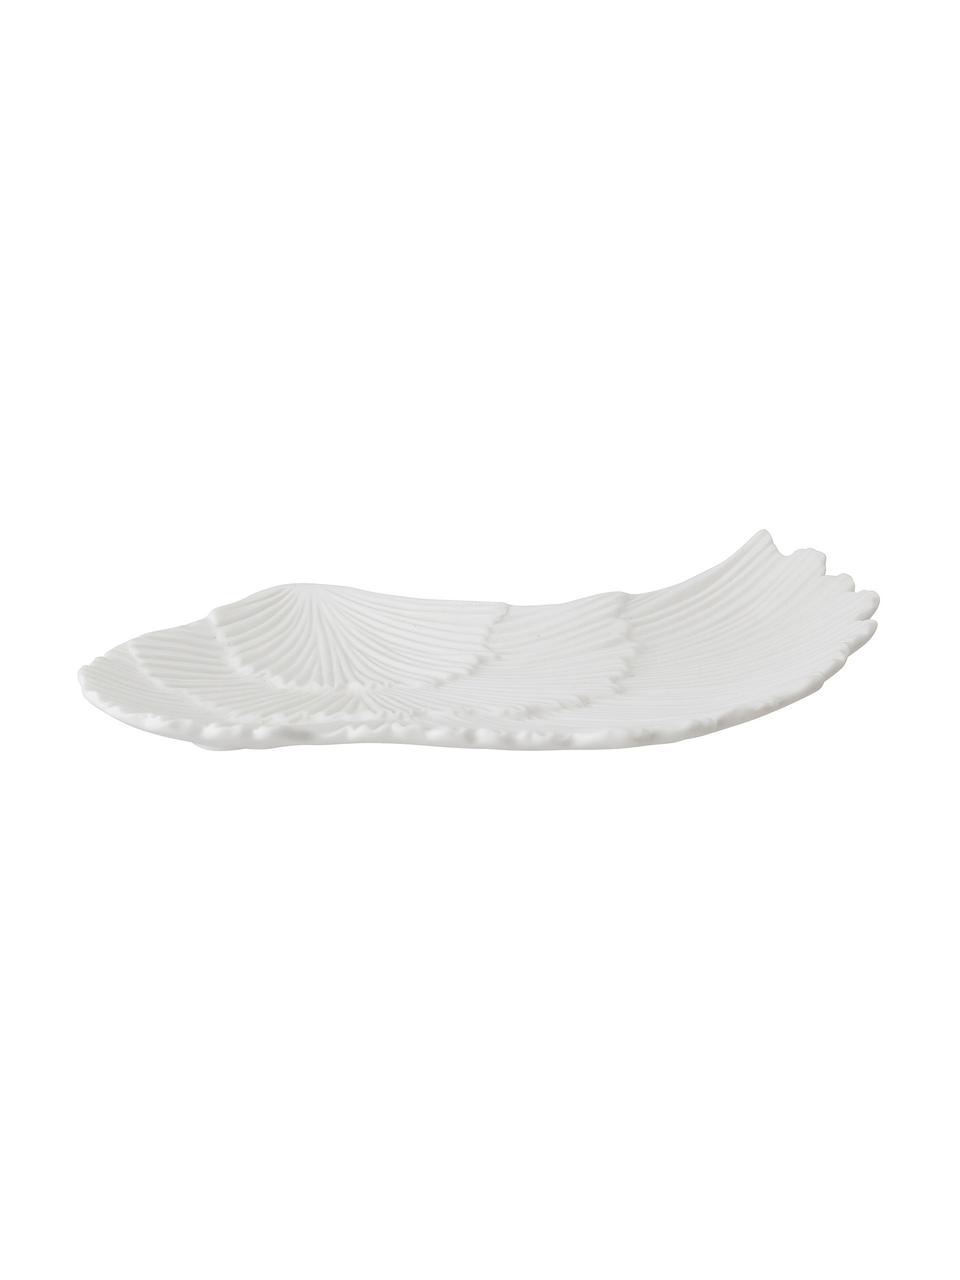 Deko-Schale Inge, Porzellan, Weiß, 10 x 21 cm